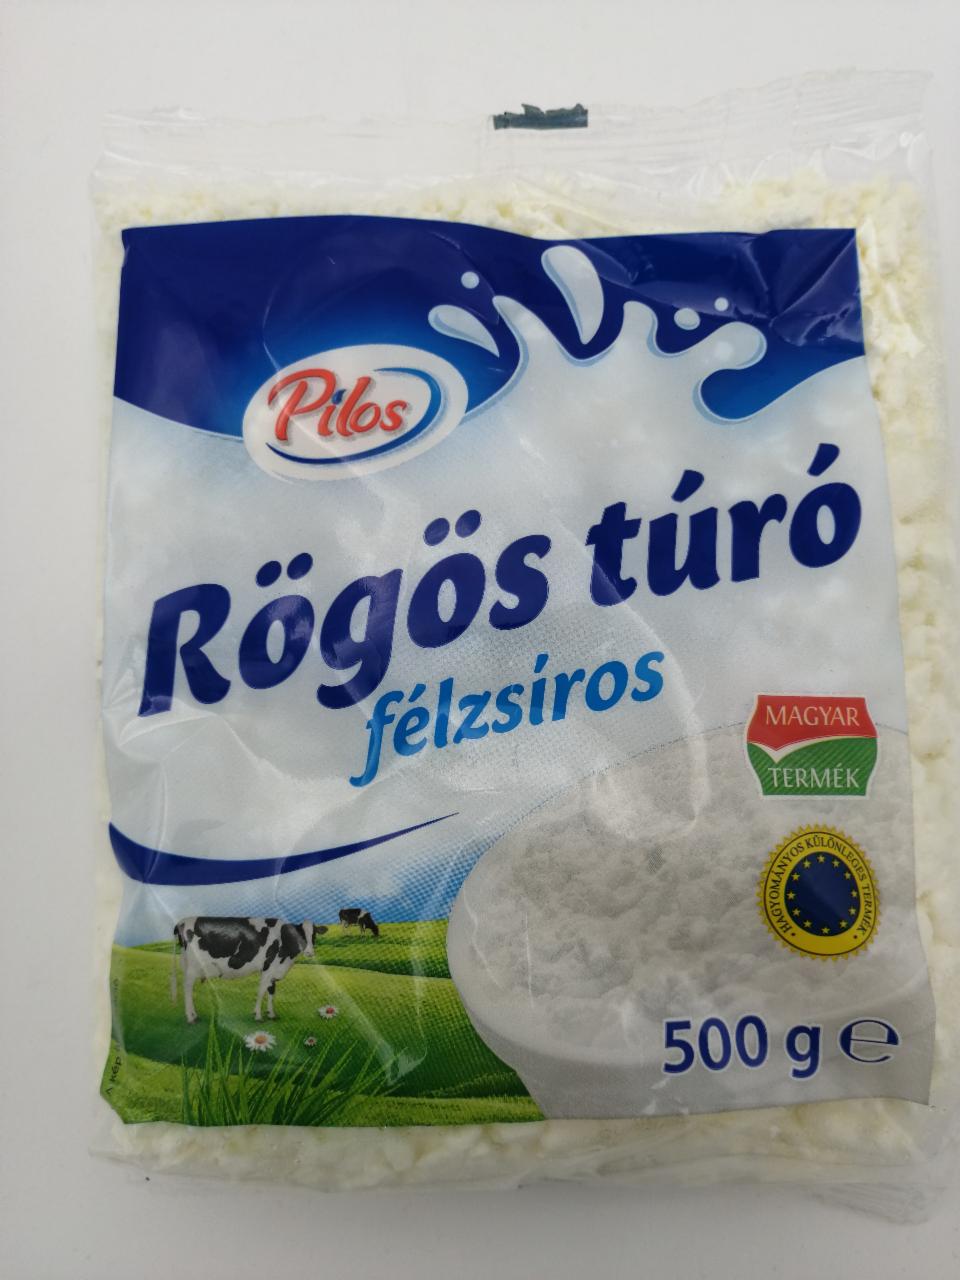 Fotografie - Rögös túró félzsíros Pilos